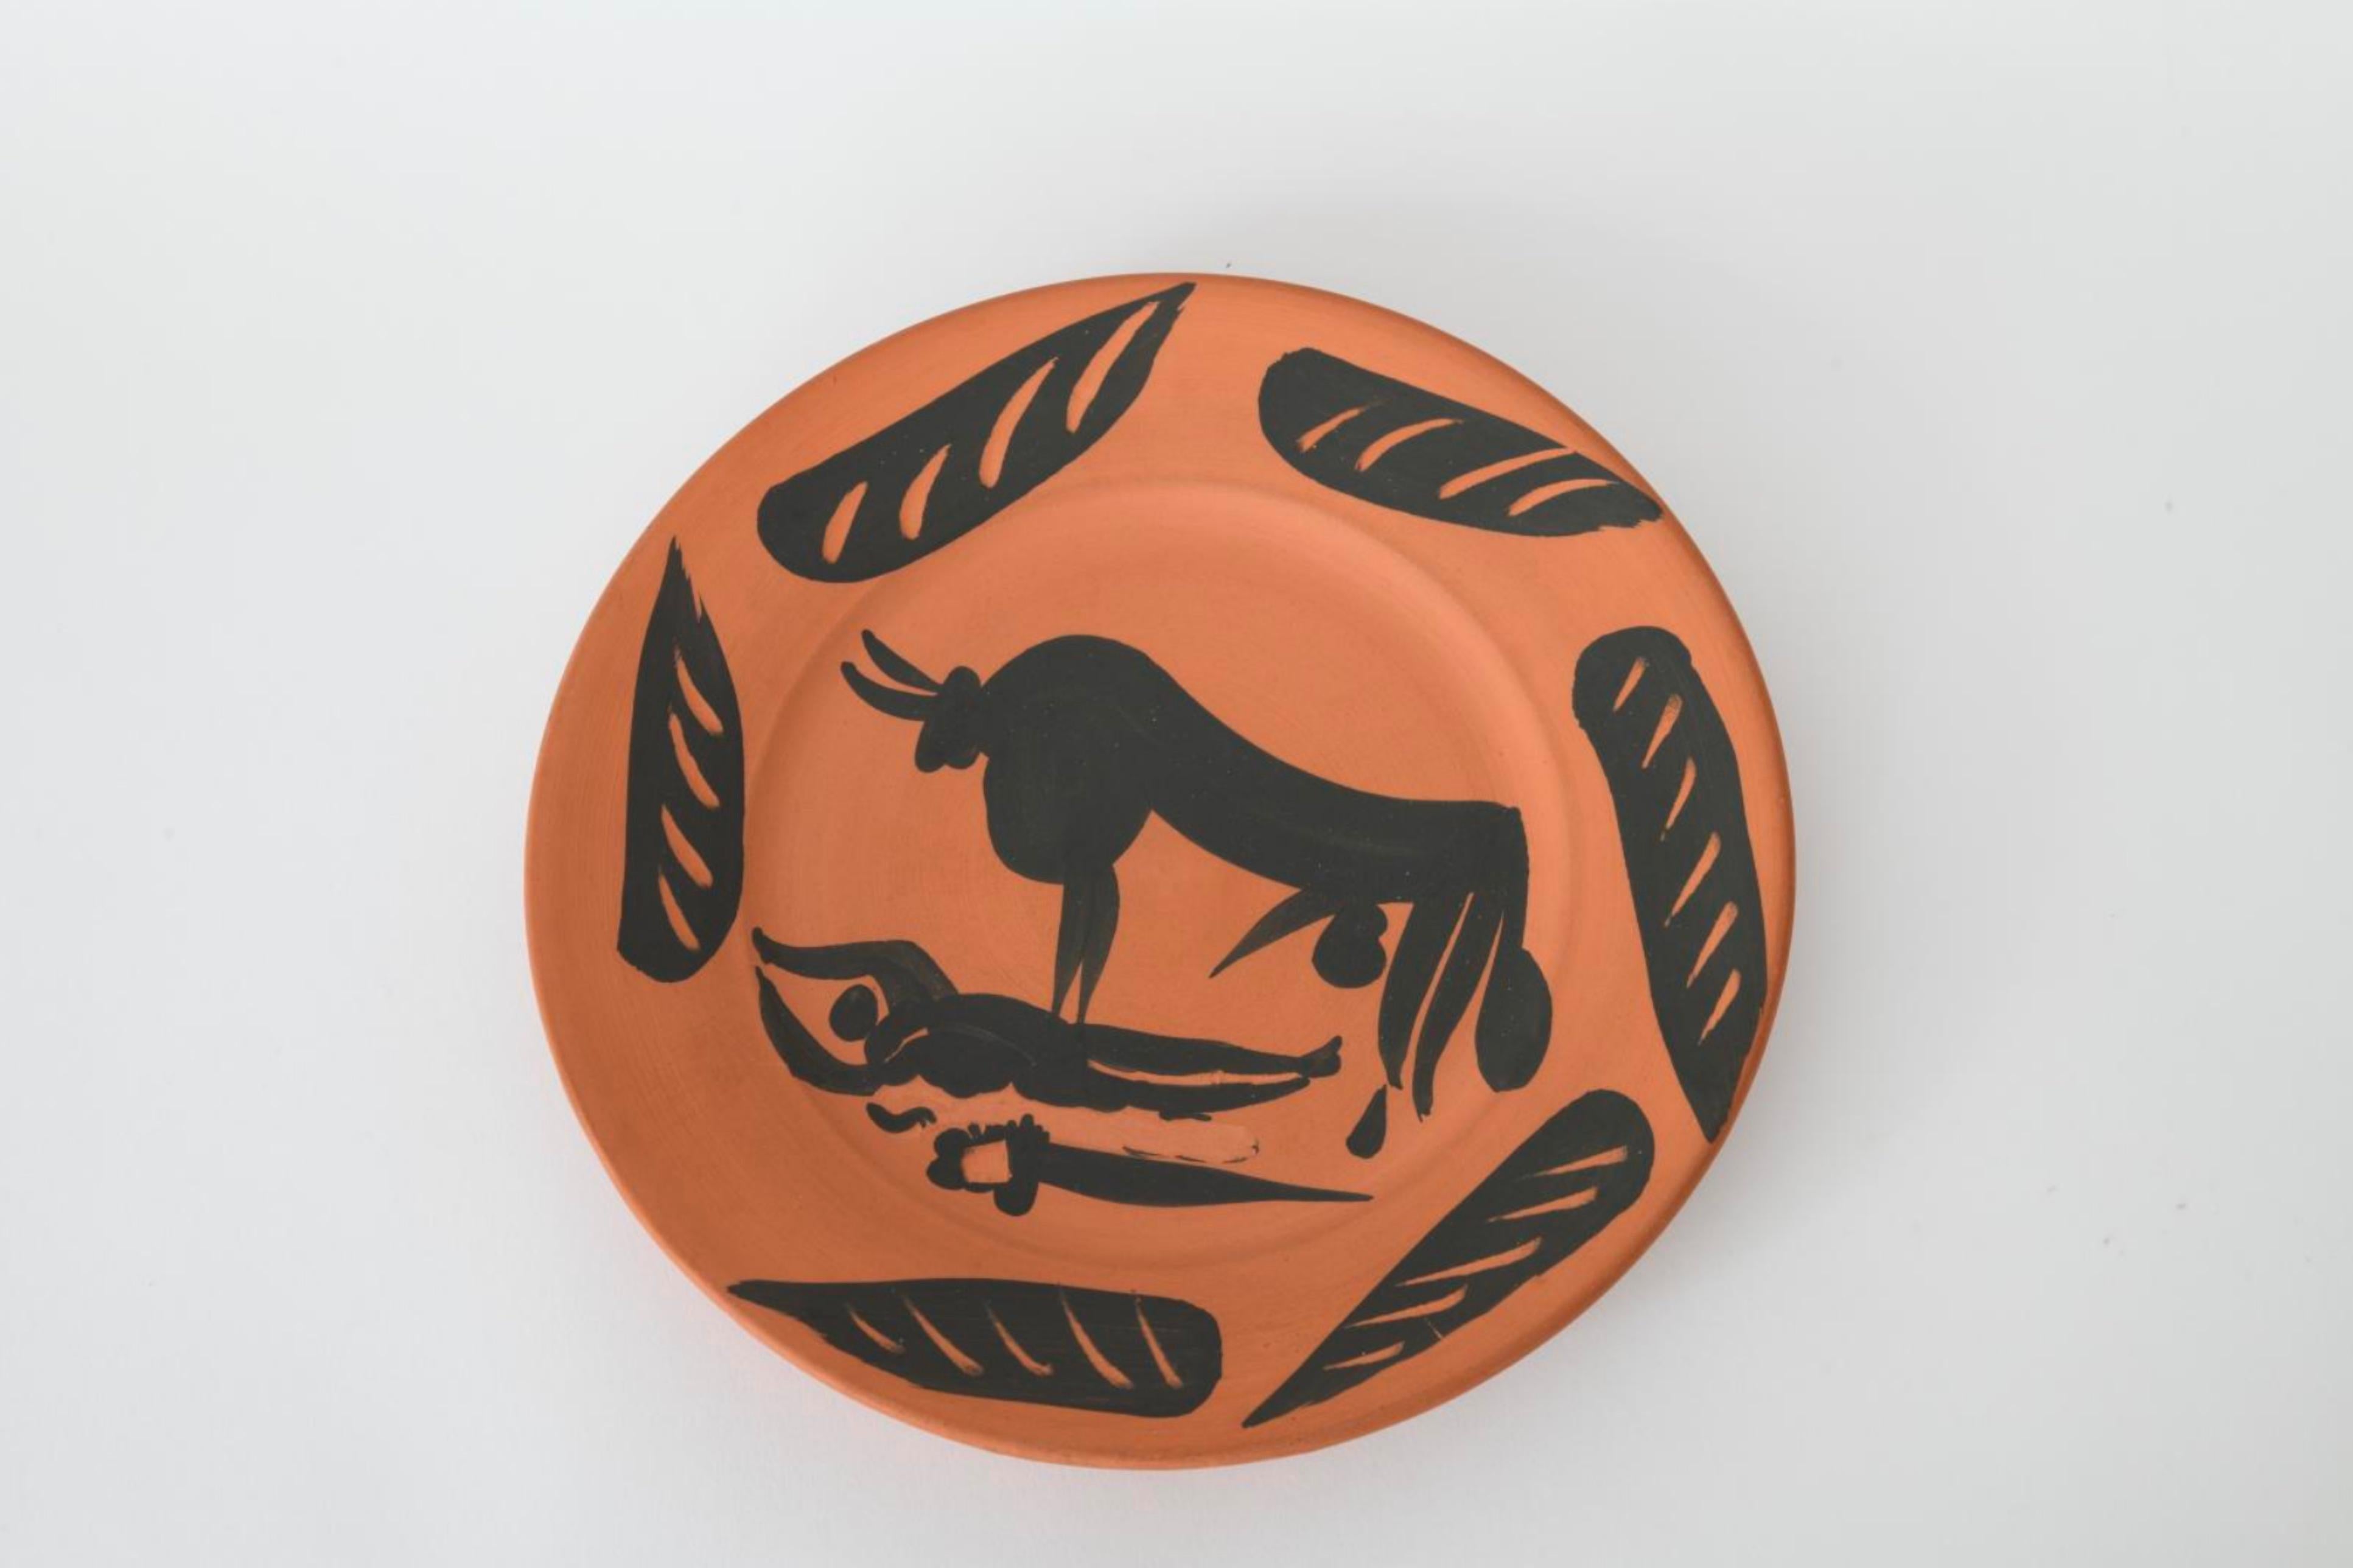 Scne de Tauromachie, Picasso, édition, années 1950, tauromachie, taureau, assiette, motif, animal - Art de Pablo Picasso